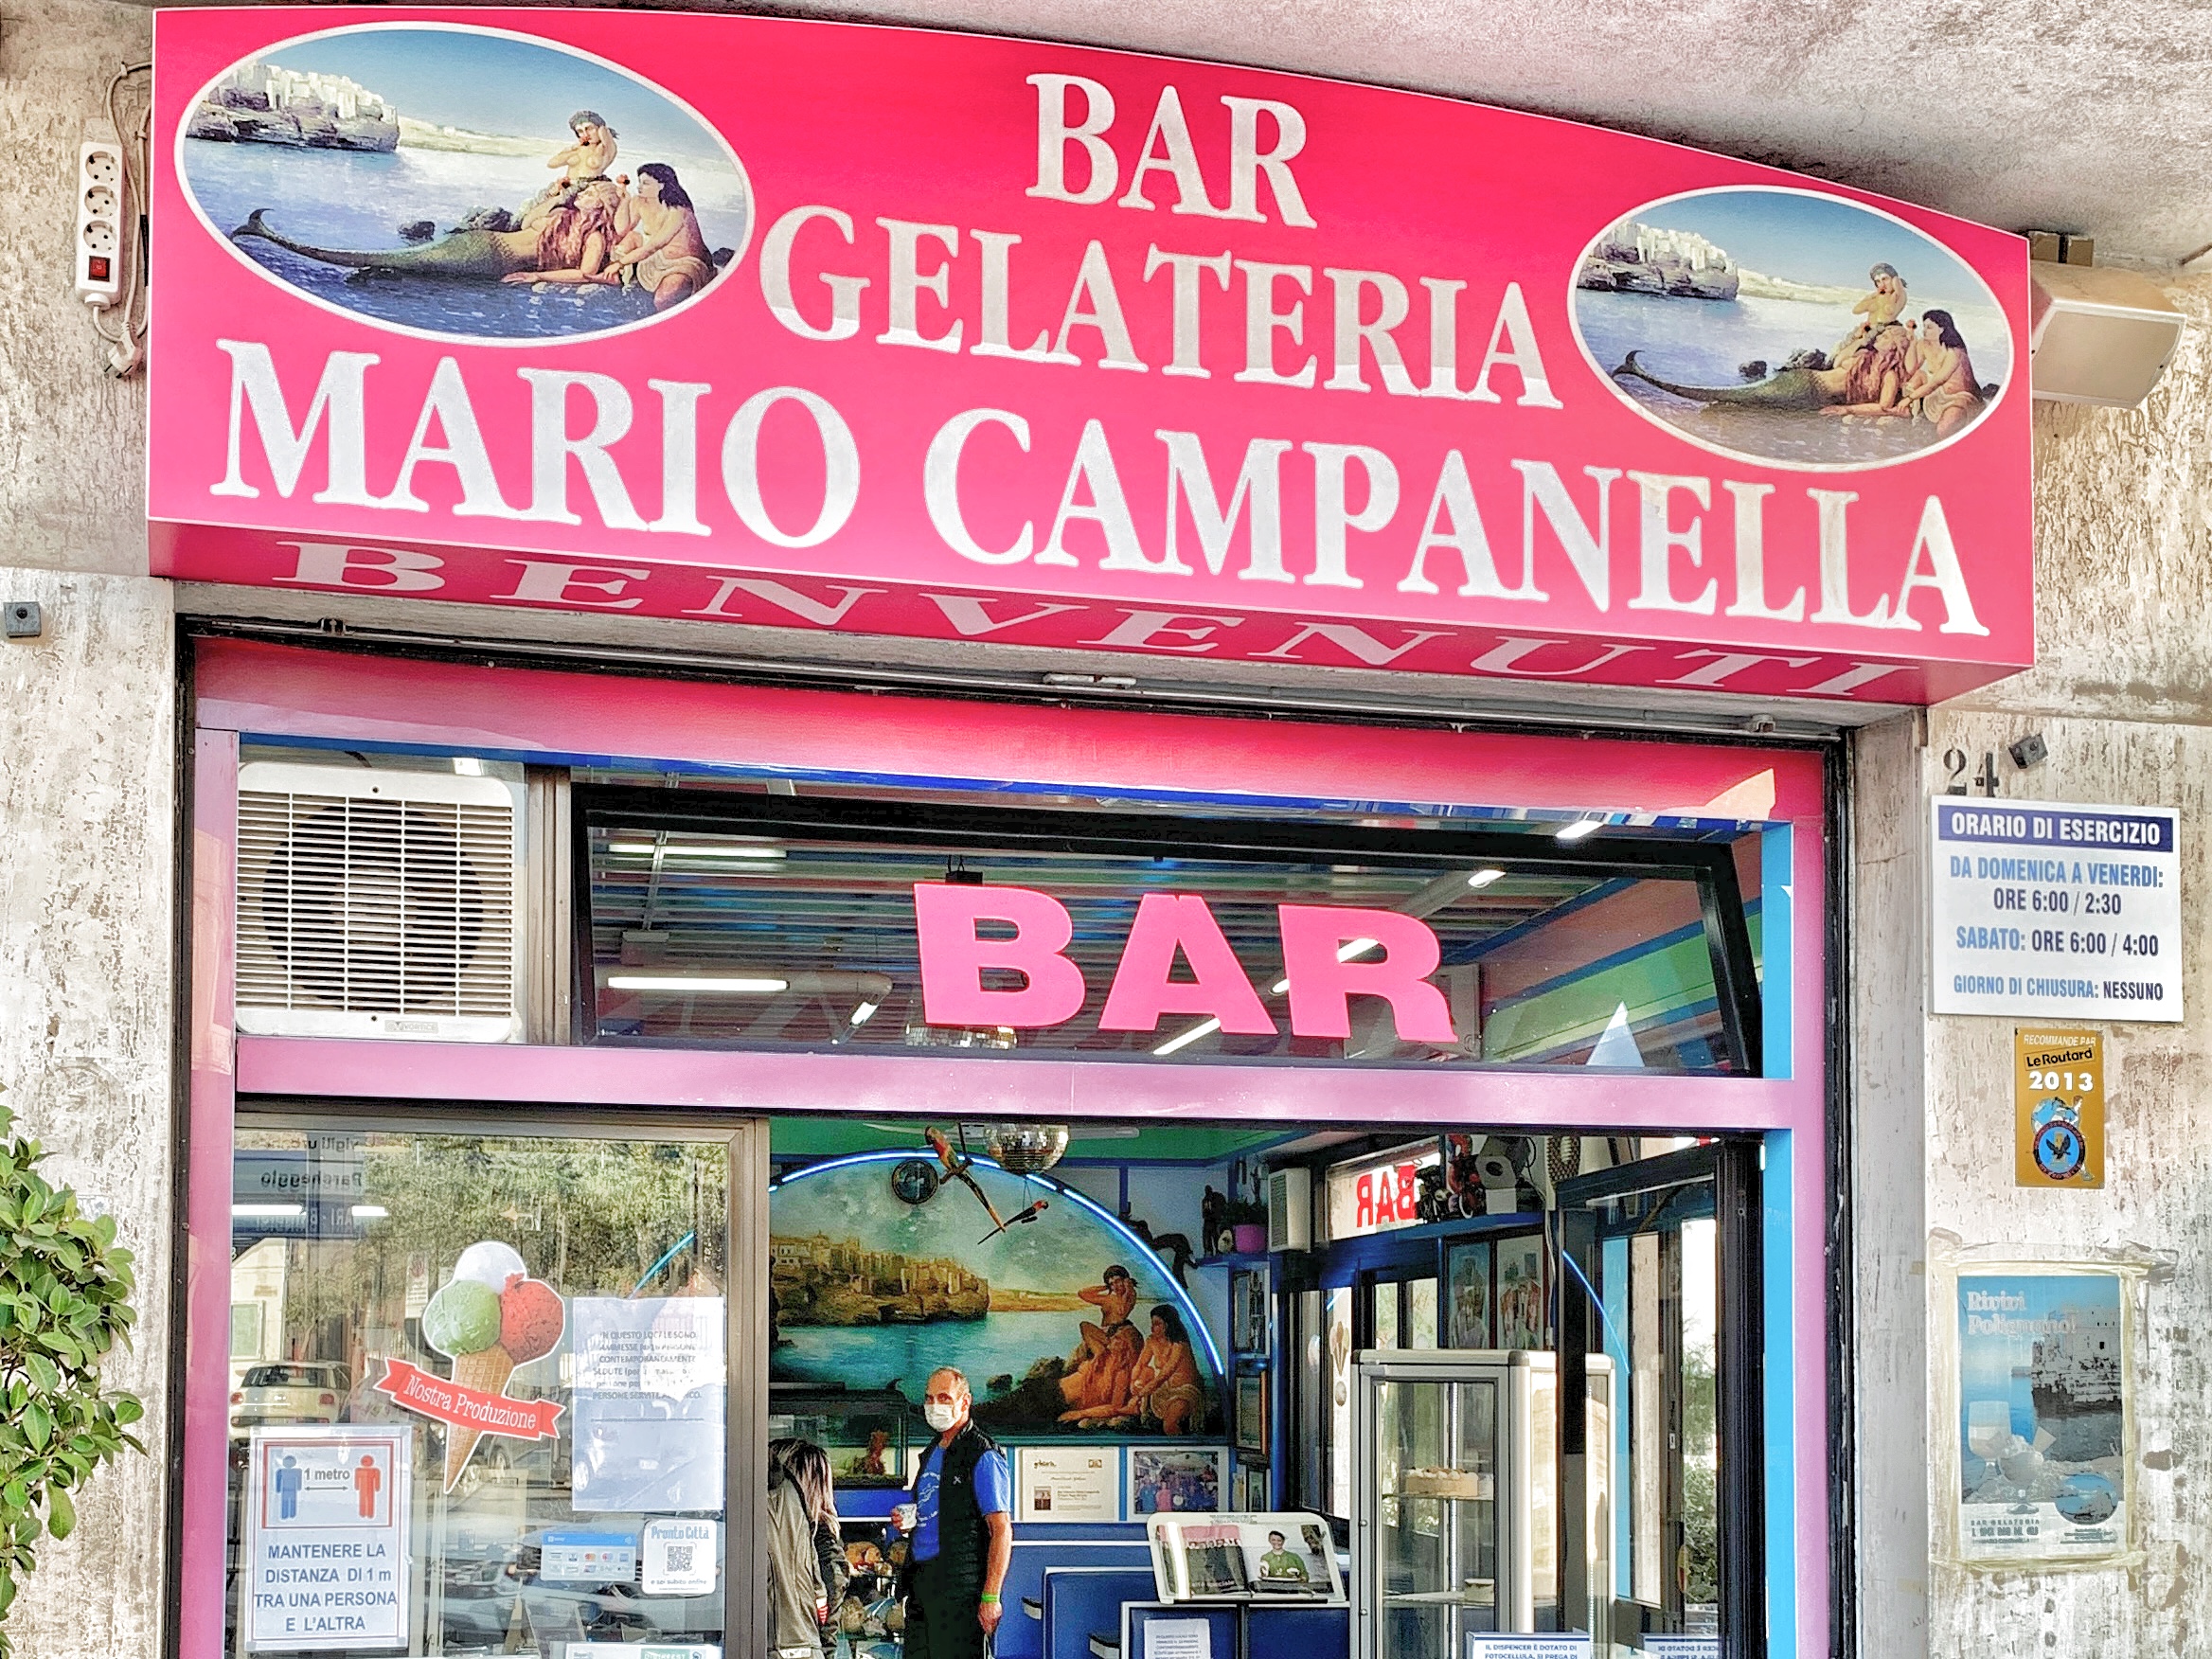 Mario Campanella “Il Super Mago del Gelo” photo by the Puglia Guys for The Big Gay Podcast from Puiglia.